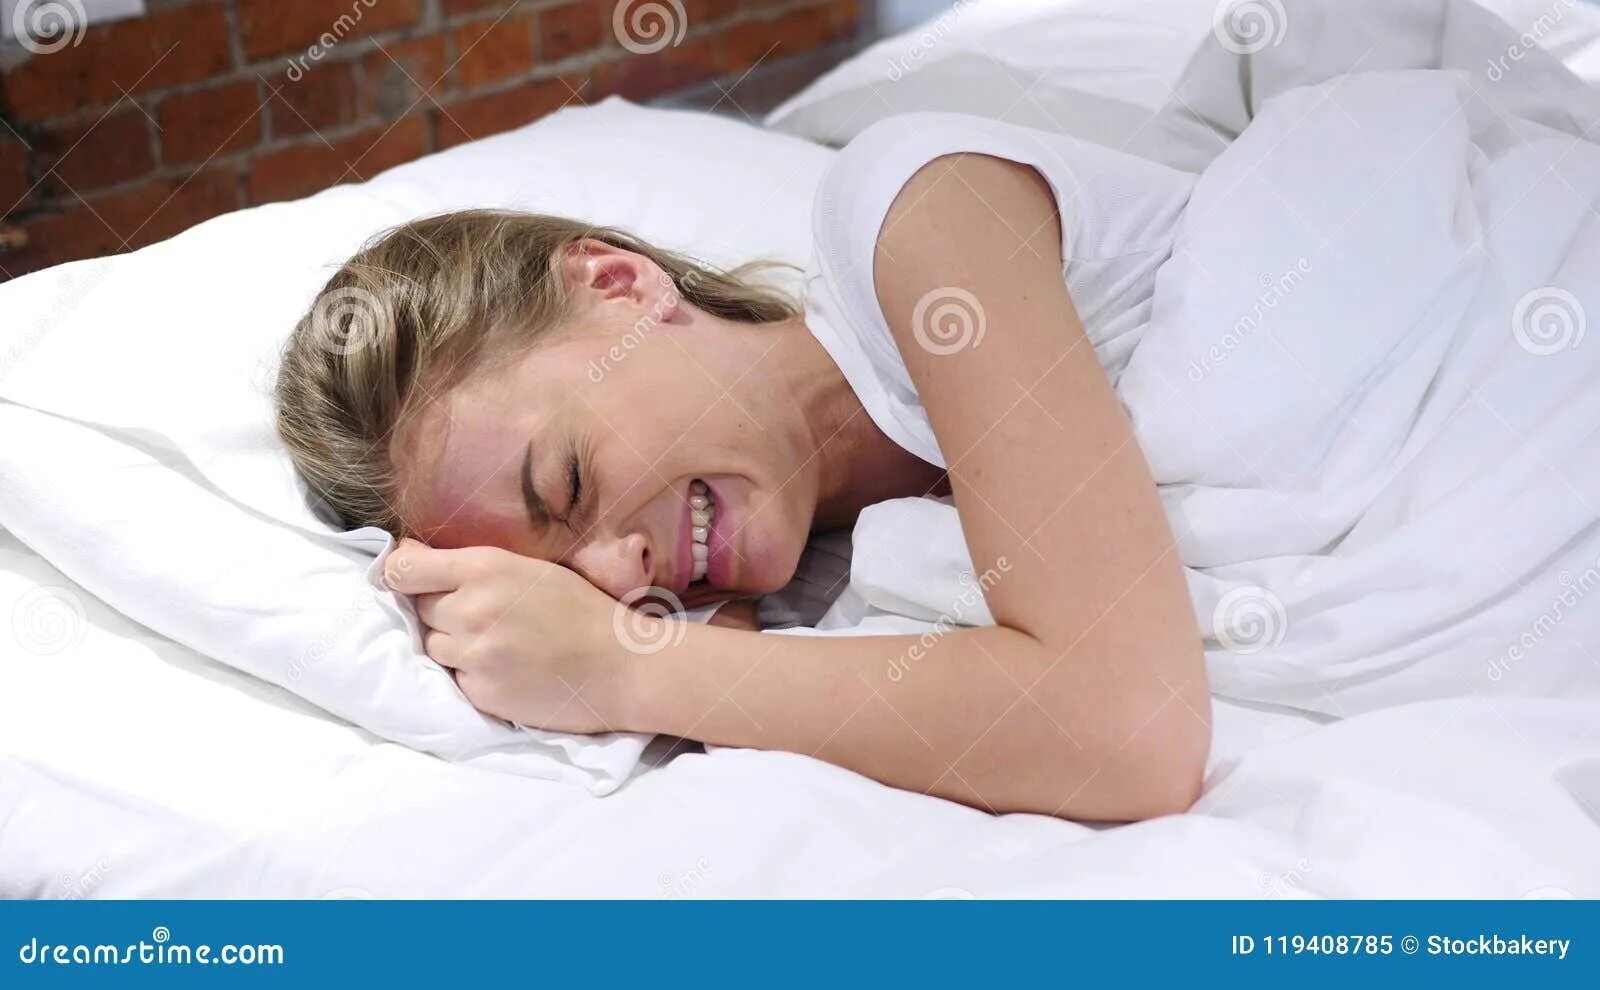 Плач в подушку. Женщина лежит в постели. Плачет в подушку. Сон мама кричит